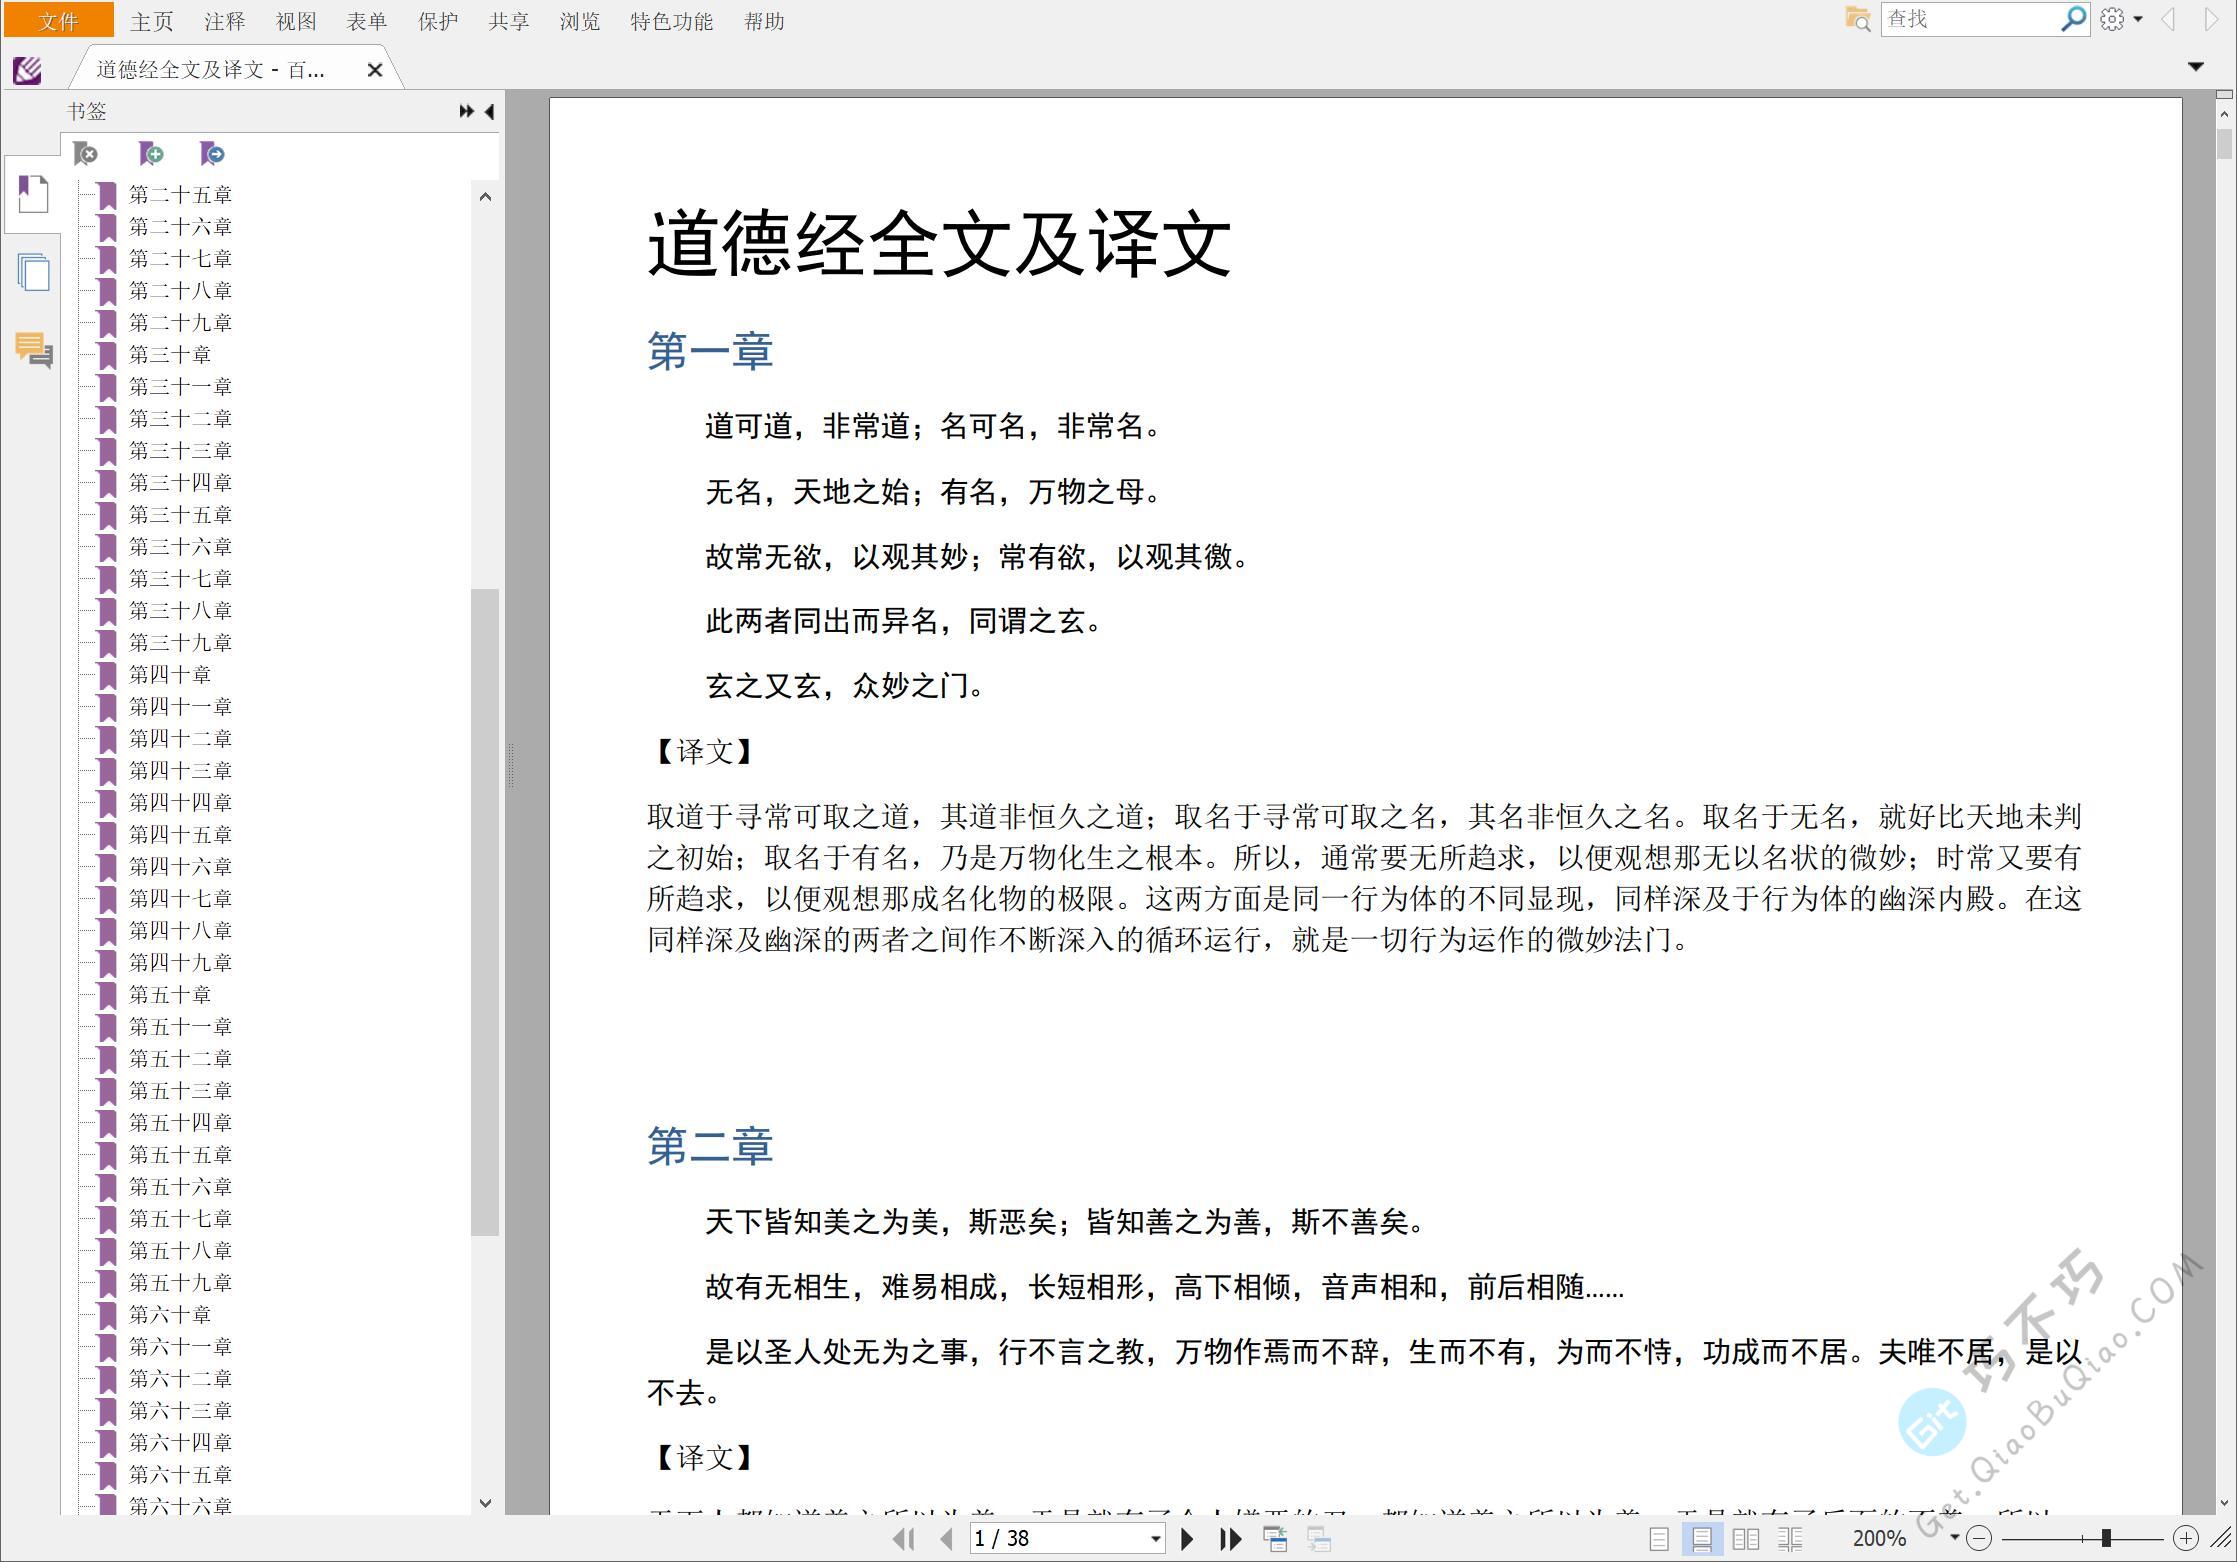 老子的国学经典《道德经》全文译文及难字注音精排EPUB、PDF、DOCX可打印版